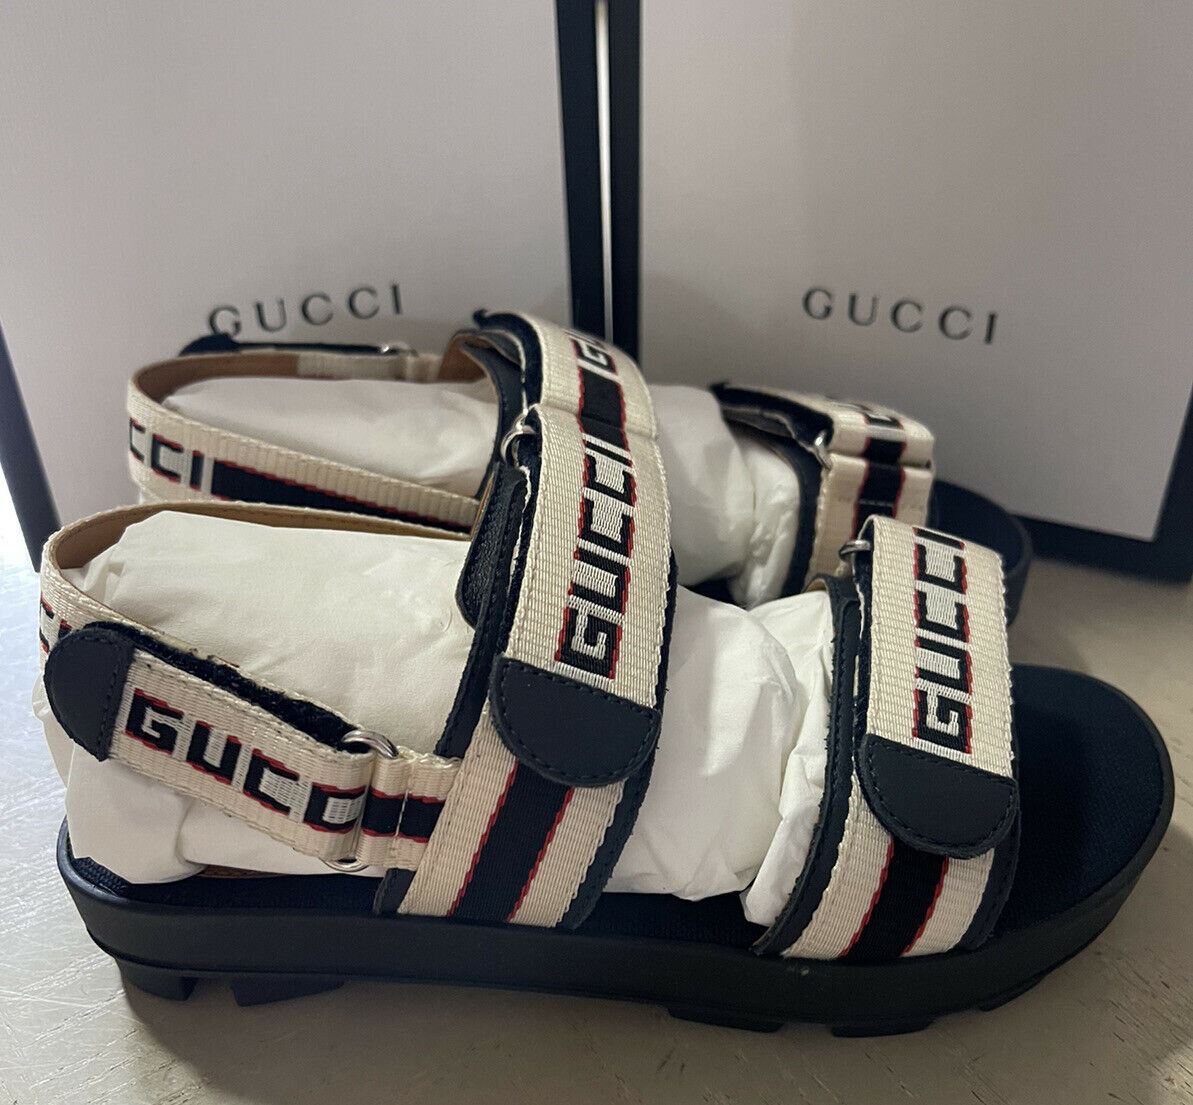 NIB Gucci Kinder-Sandalen aus Segeltuch/Leder, Schwarz/Weiß, Größe 30/12 US, Alter 5,5